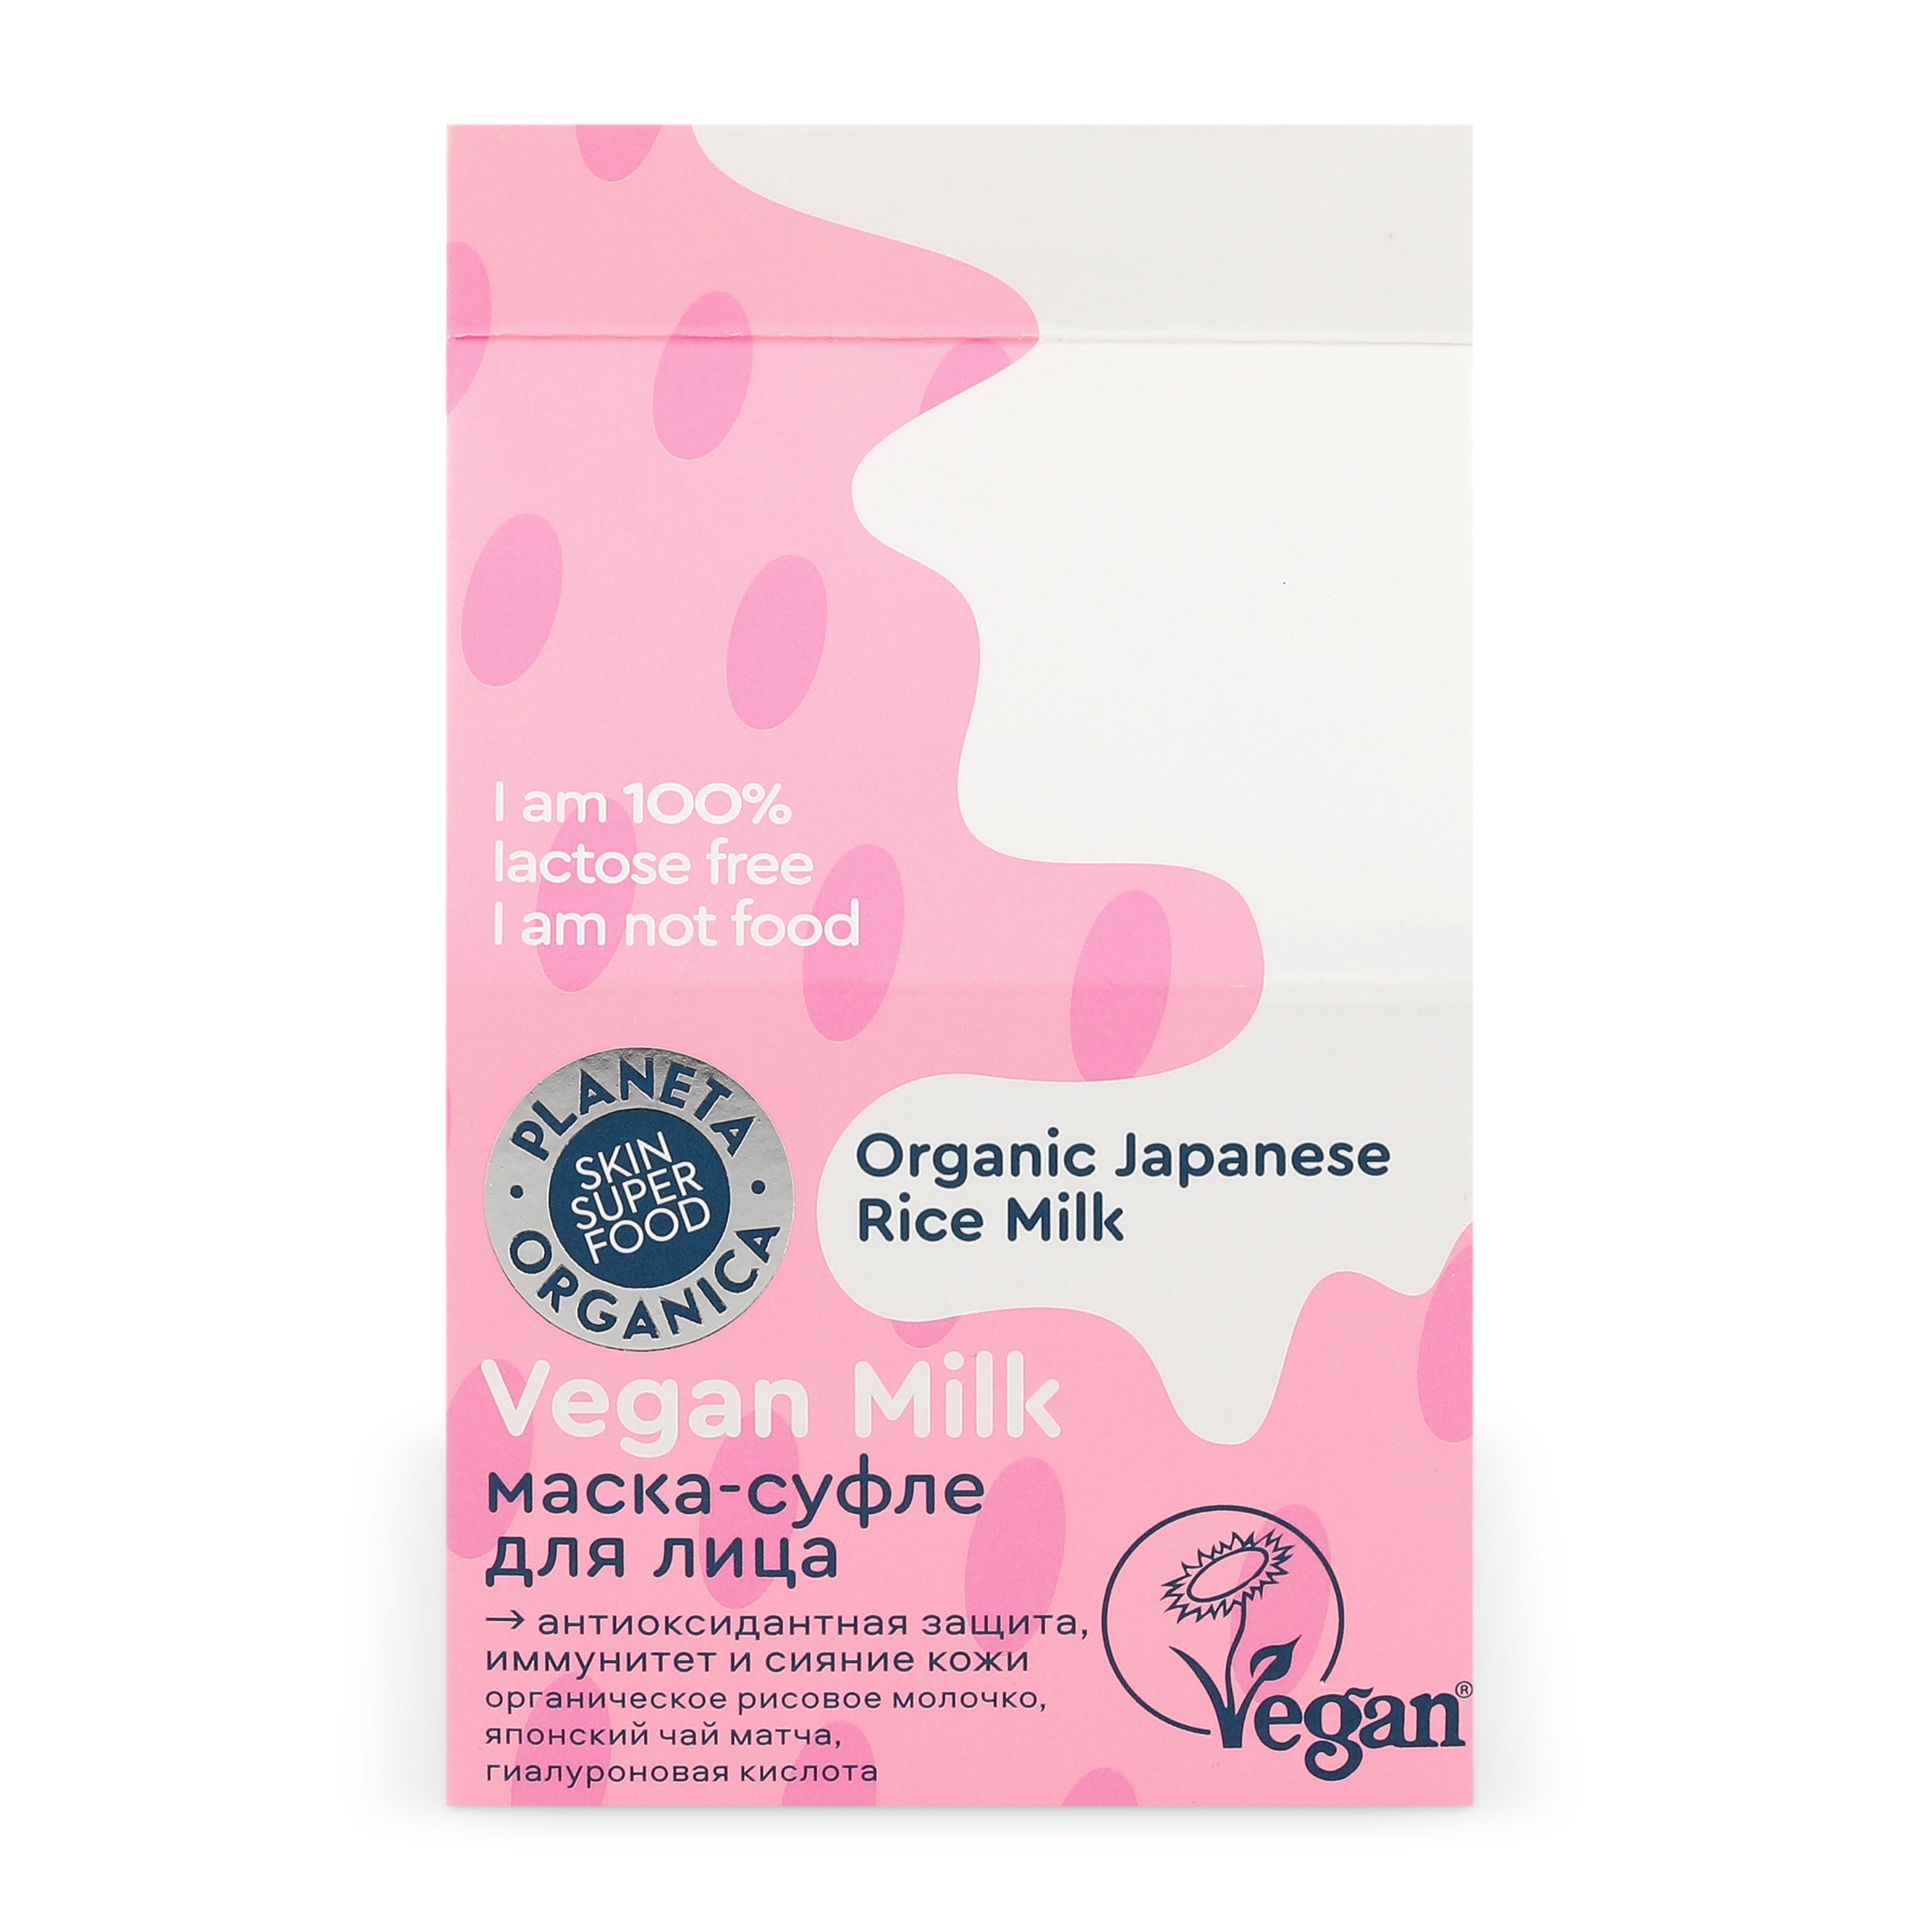 Маска-суфле для лица Planeta Organica Vegan milk, защита, сияние и иммунитет кожи, 70 мл elskin маска суфле мед 10